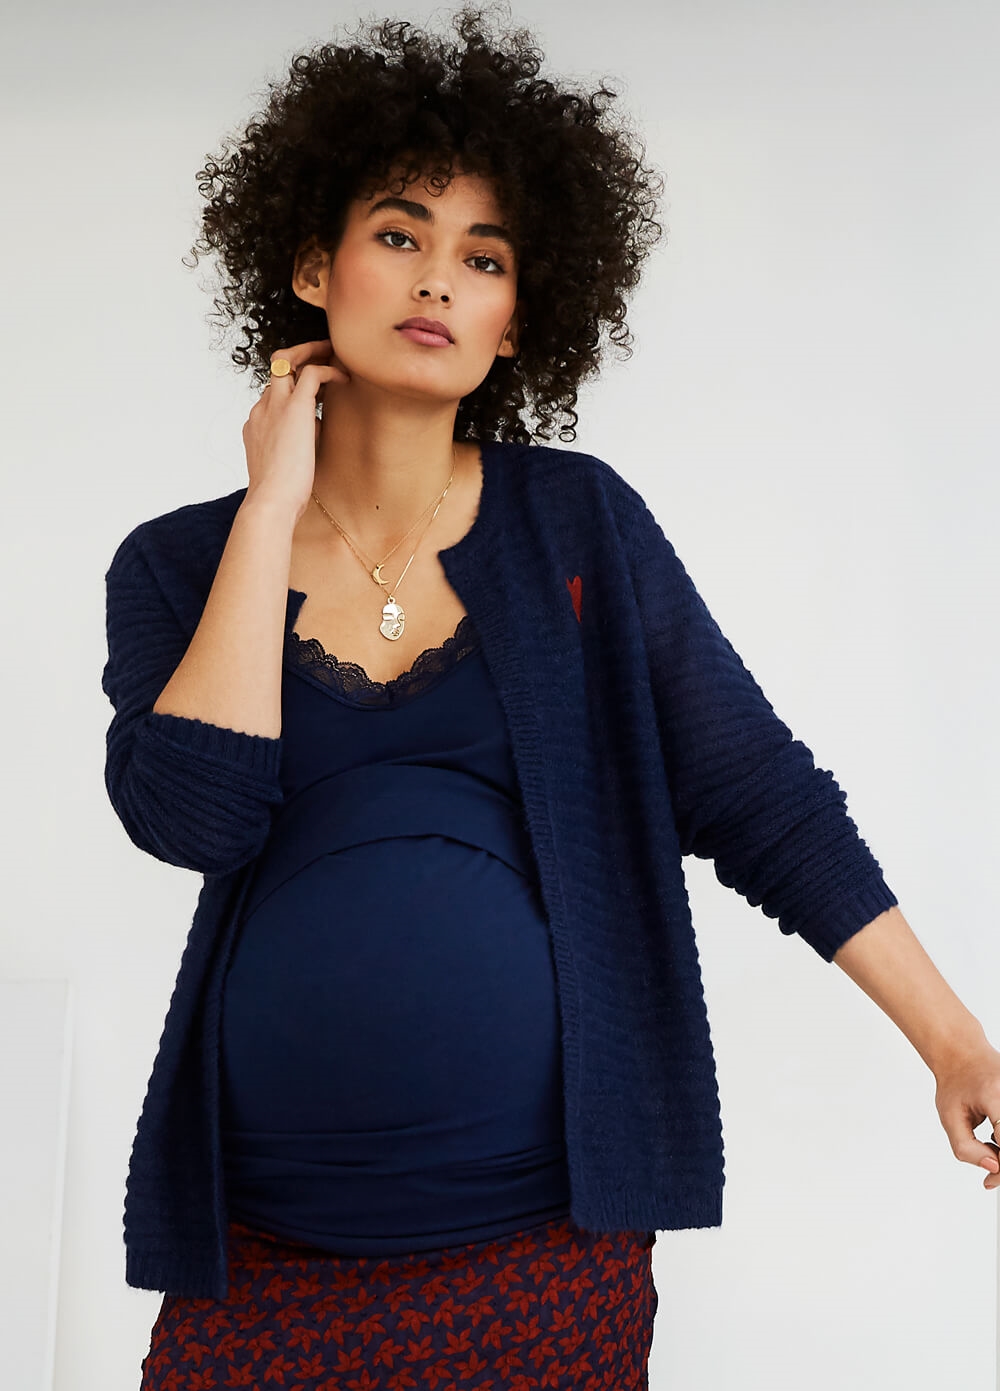 Queen mum - Textured Maternity Knit Cardigan in Blue | Queen Bee